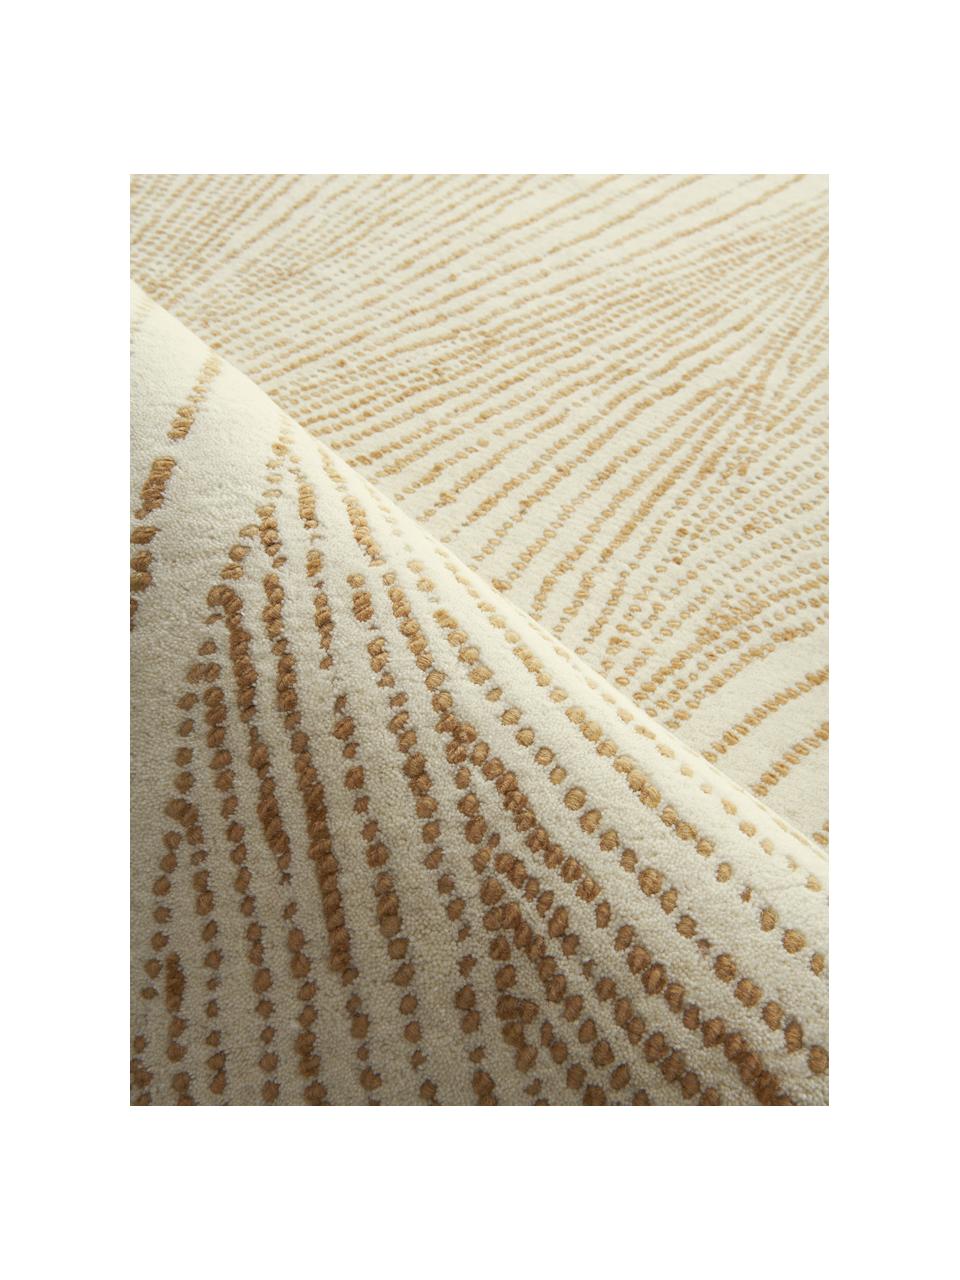 Grand tapis en laine tissé à la main Waverly, Beige, blanc